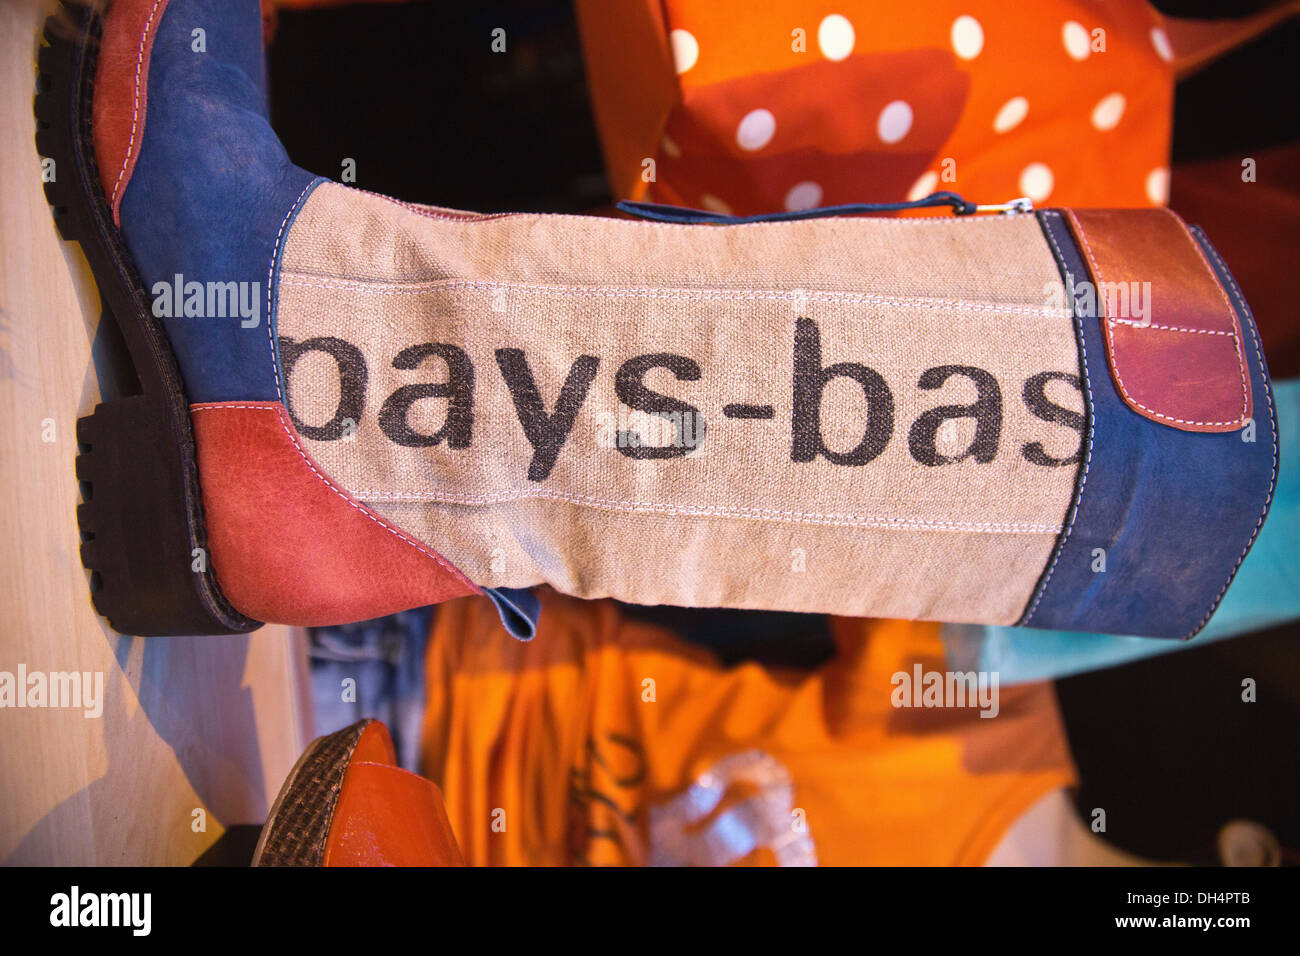 Pays-bas, Amsterdam, le 27 avril. Kingsday La fièvre Orange en vitrine de magasin de vêtements. Les couleurs, rouge, blanc et bleu Banque D'Images